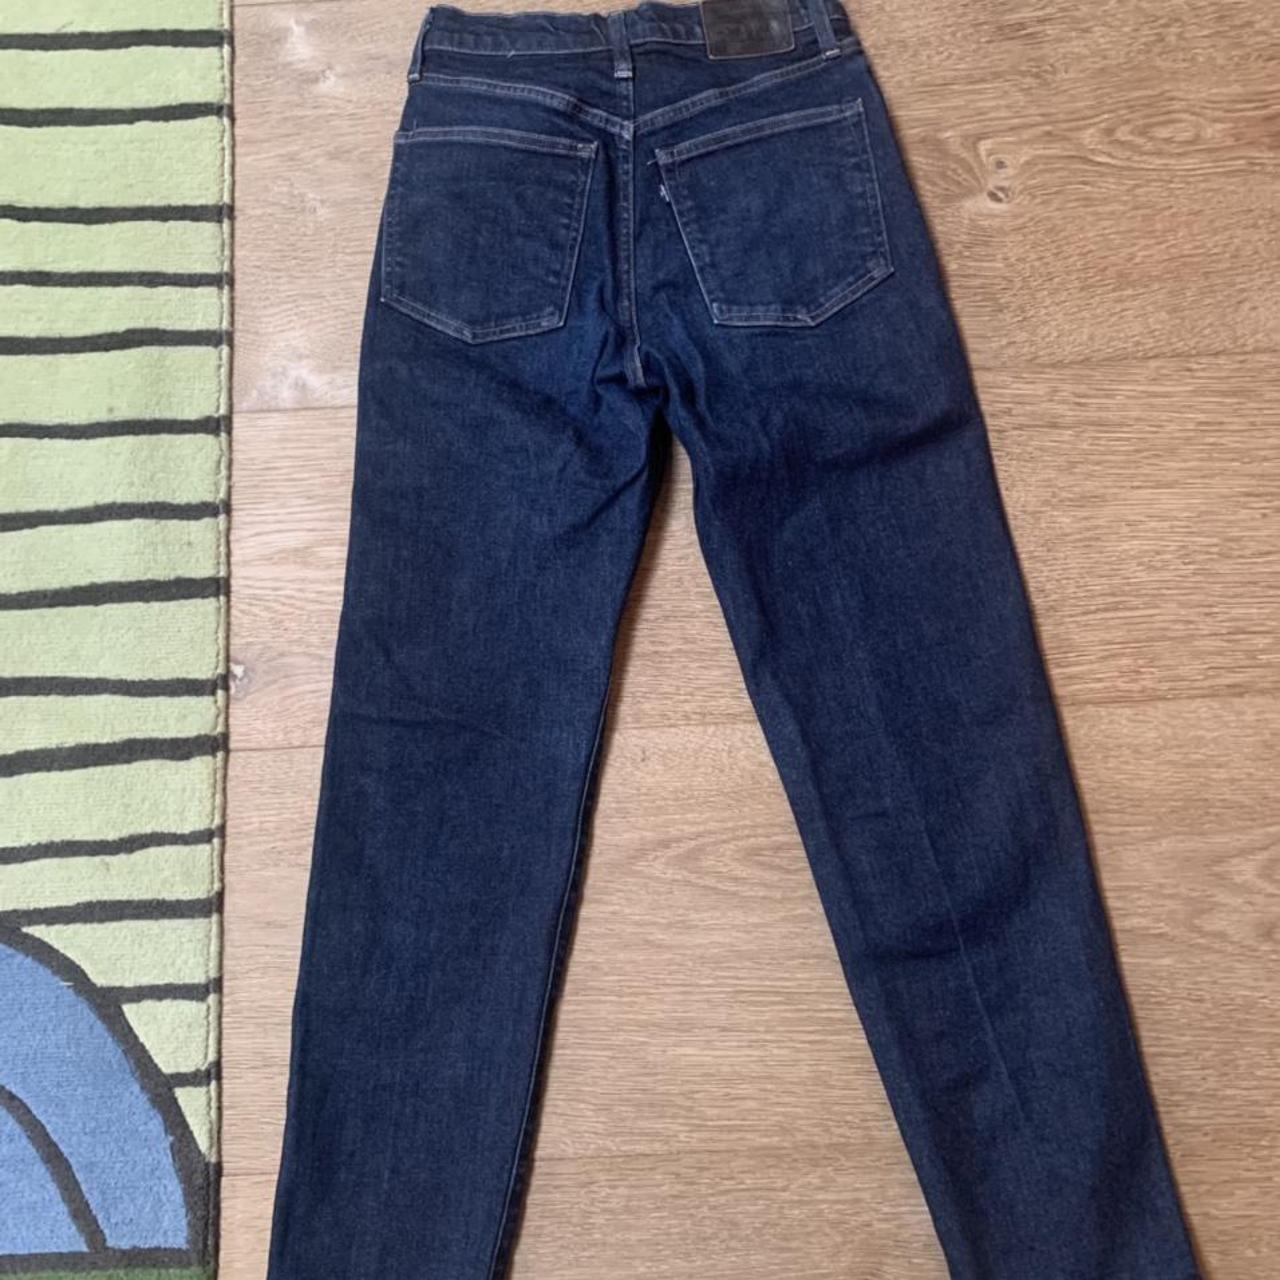 Levis Jeans #jeans #levis #denim #levisjeans - Depop